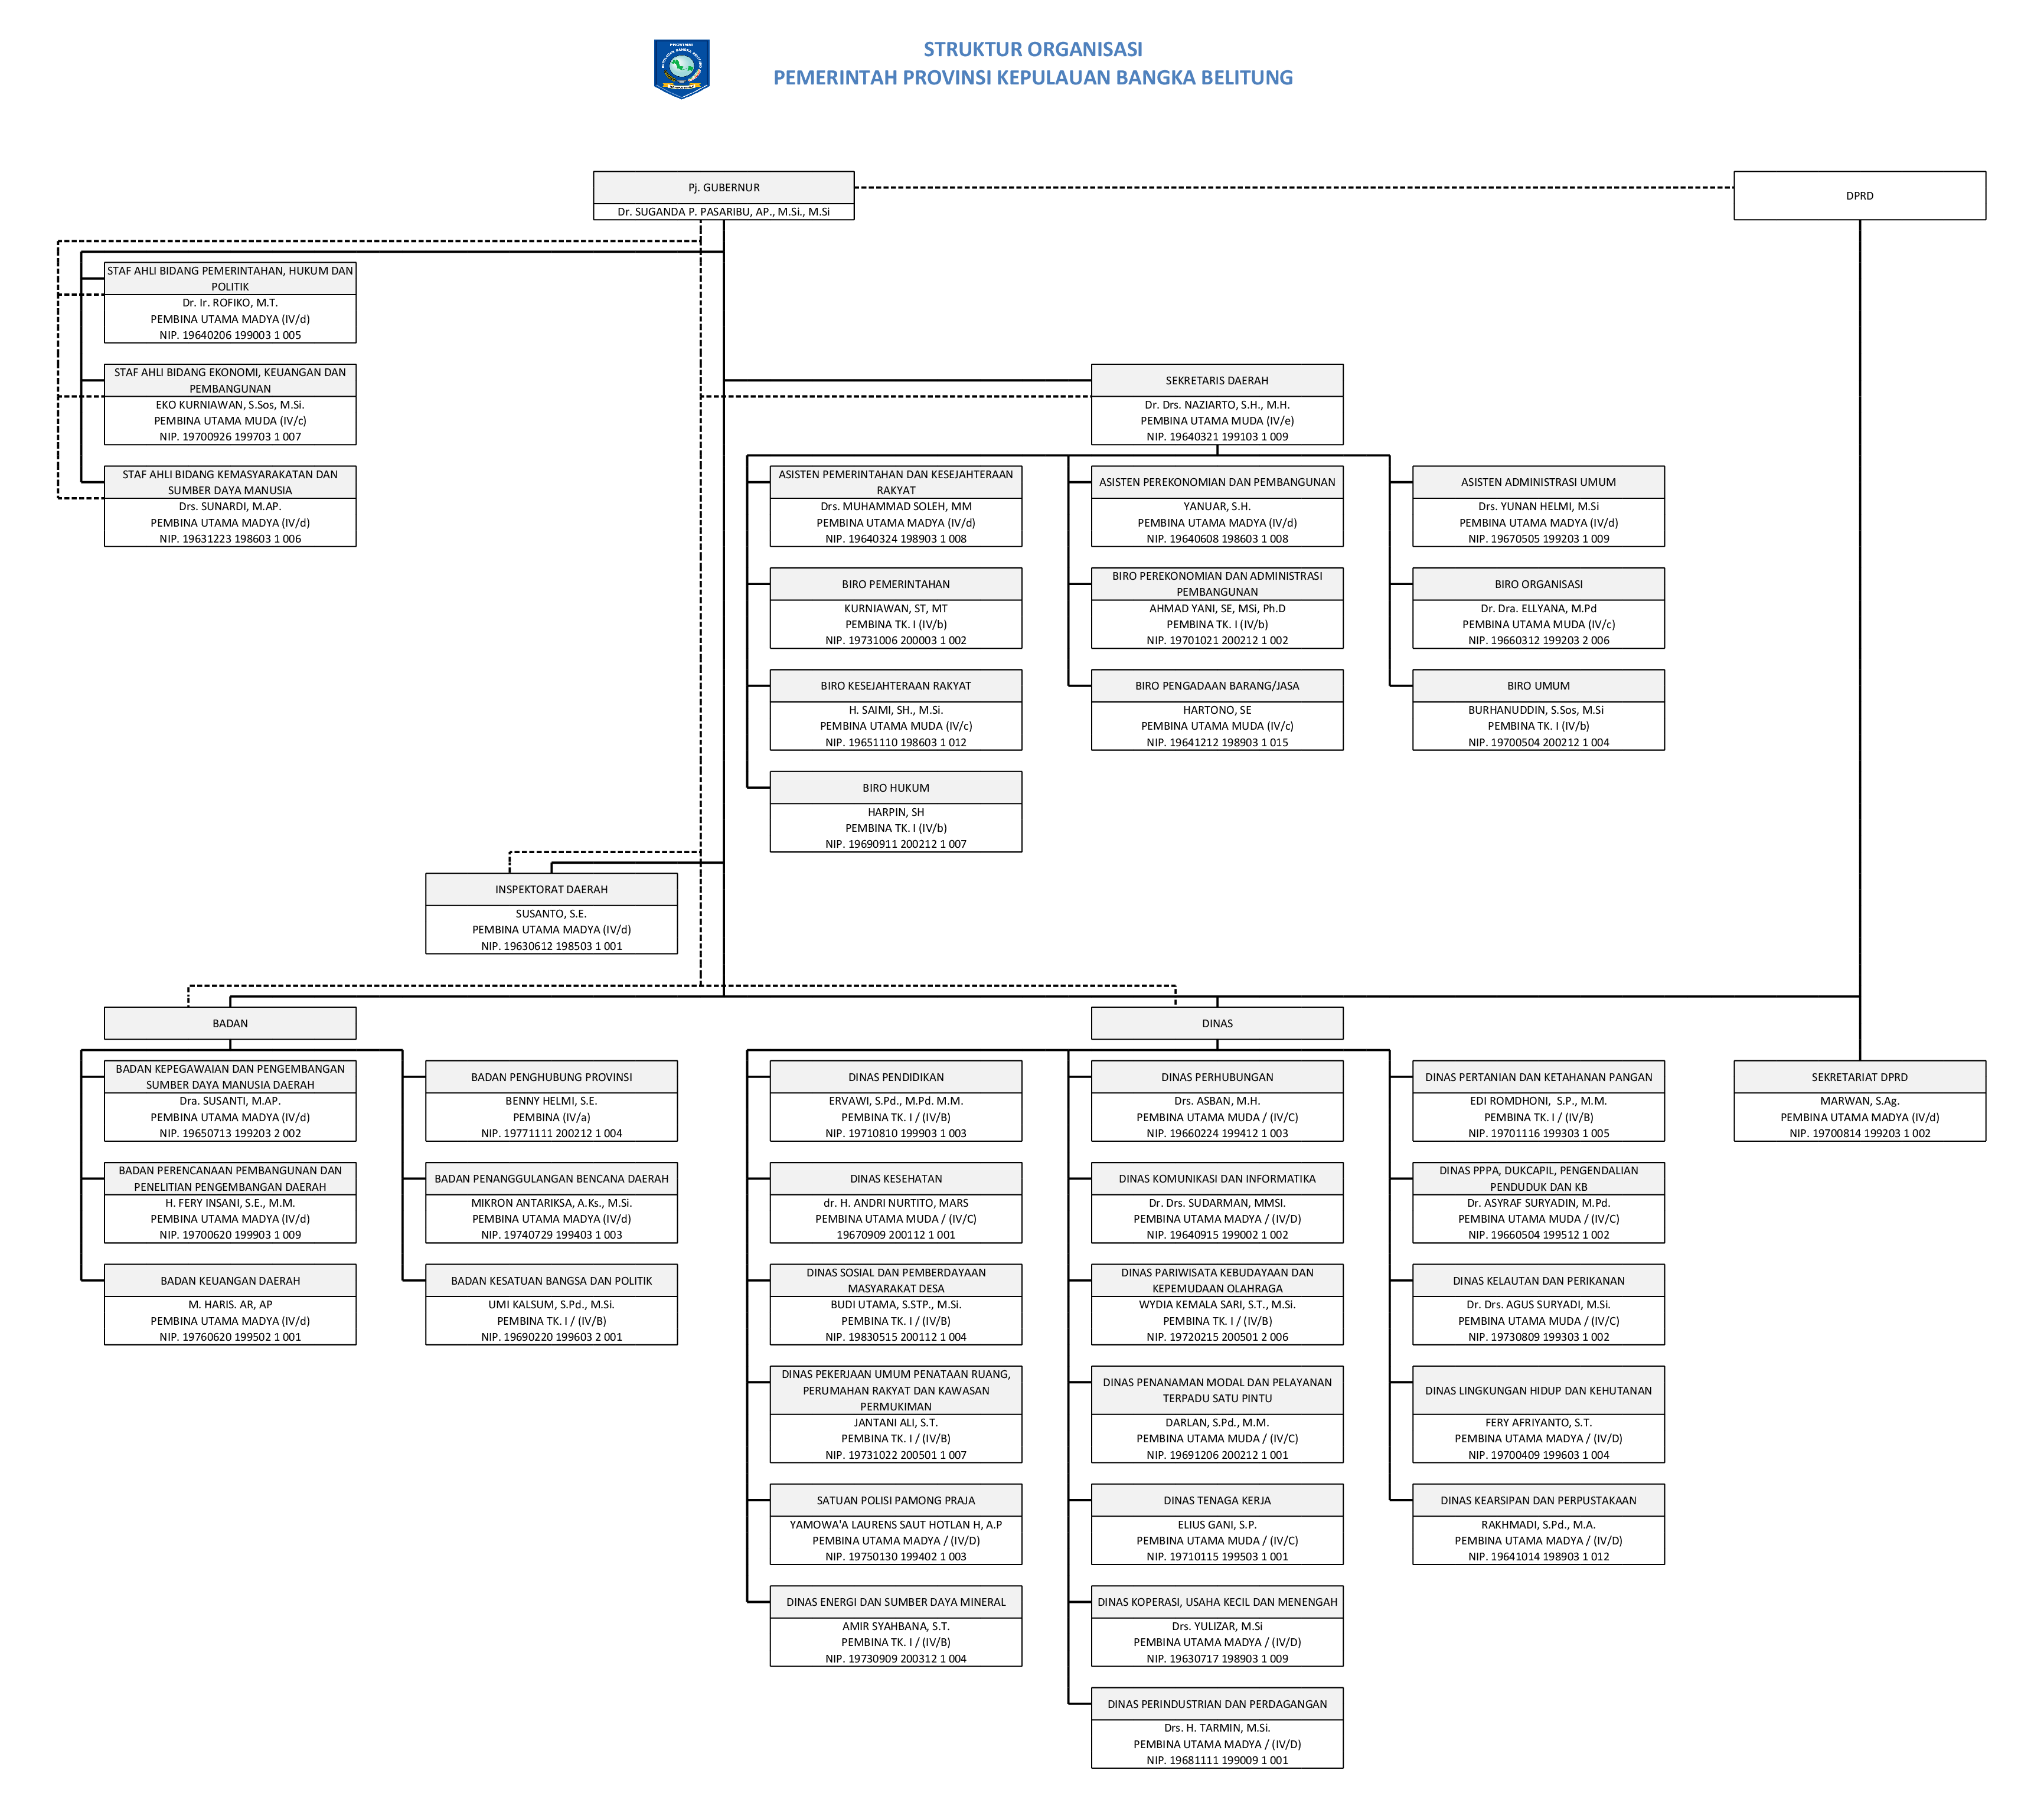 Struktur Organisasi Pemerintah Provinsi Kepulauan Bangka Belitung